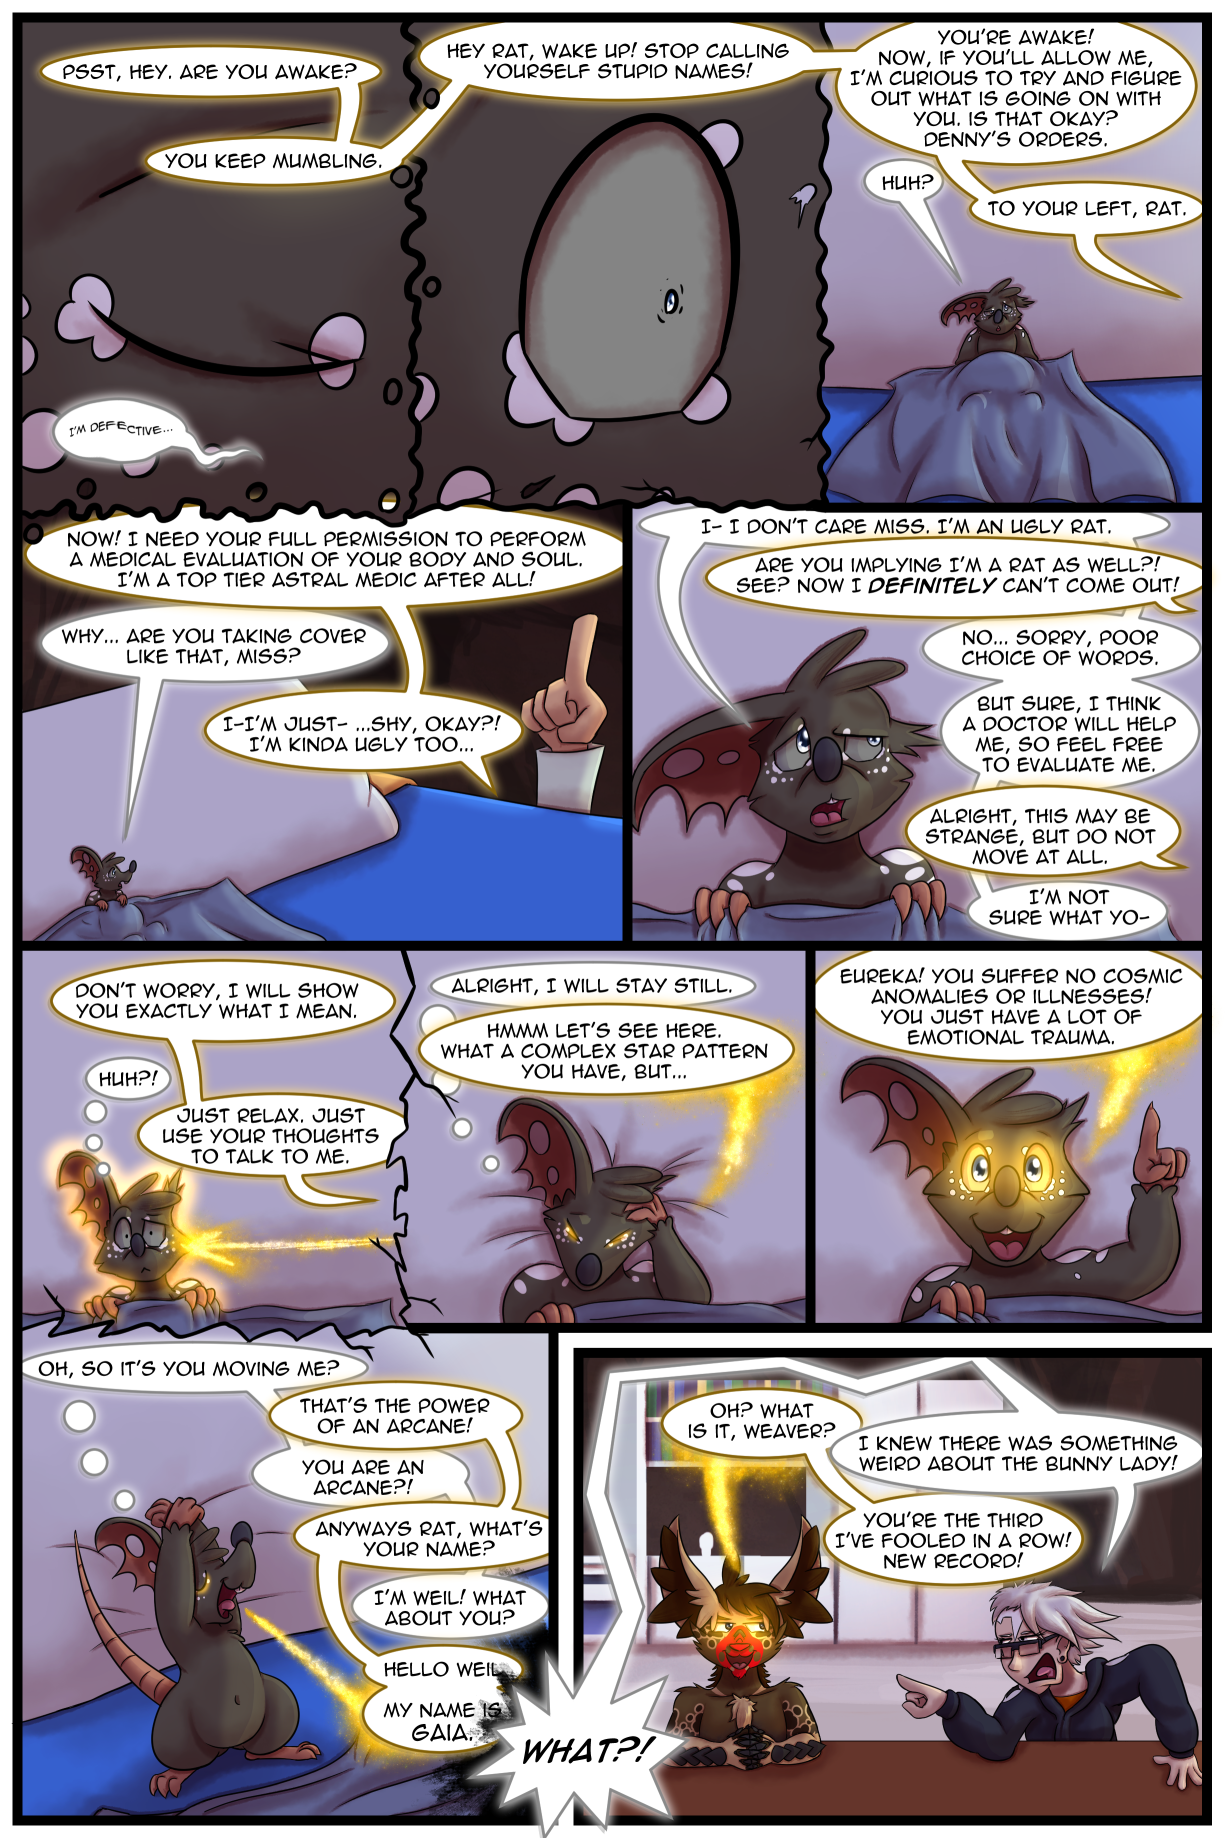 Ch5 Page 36 – Gaia